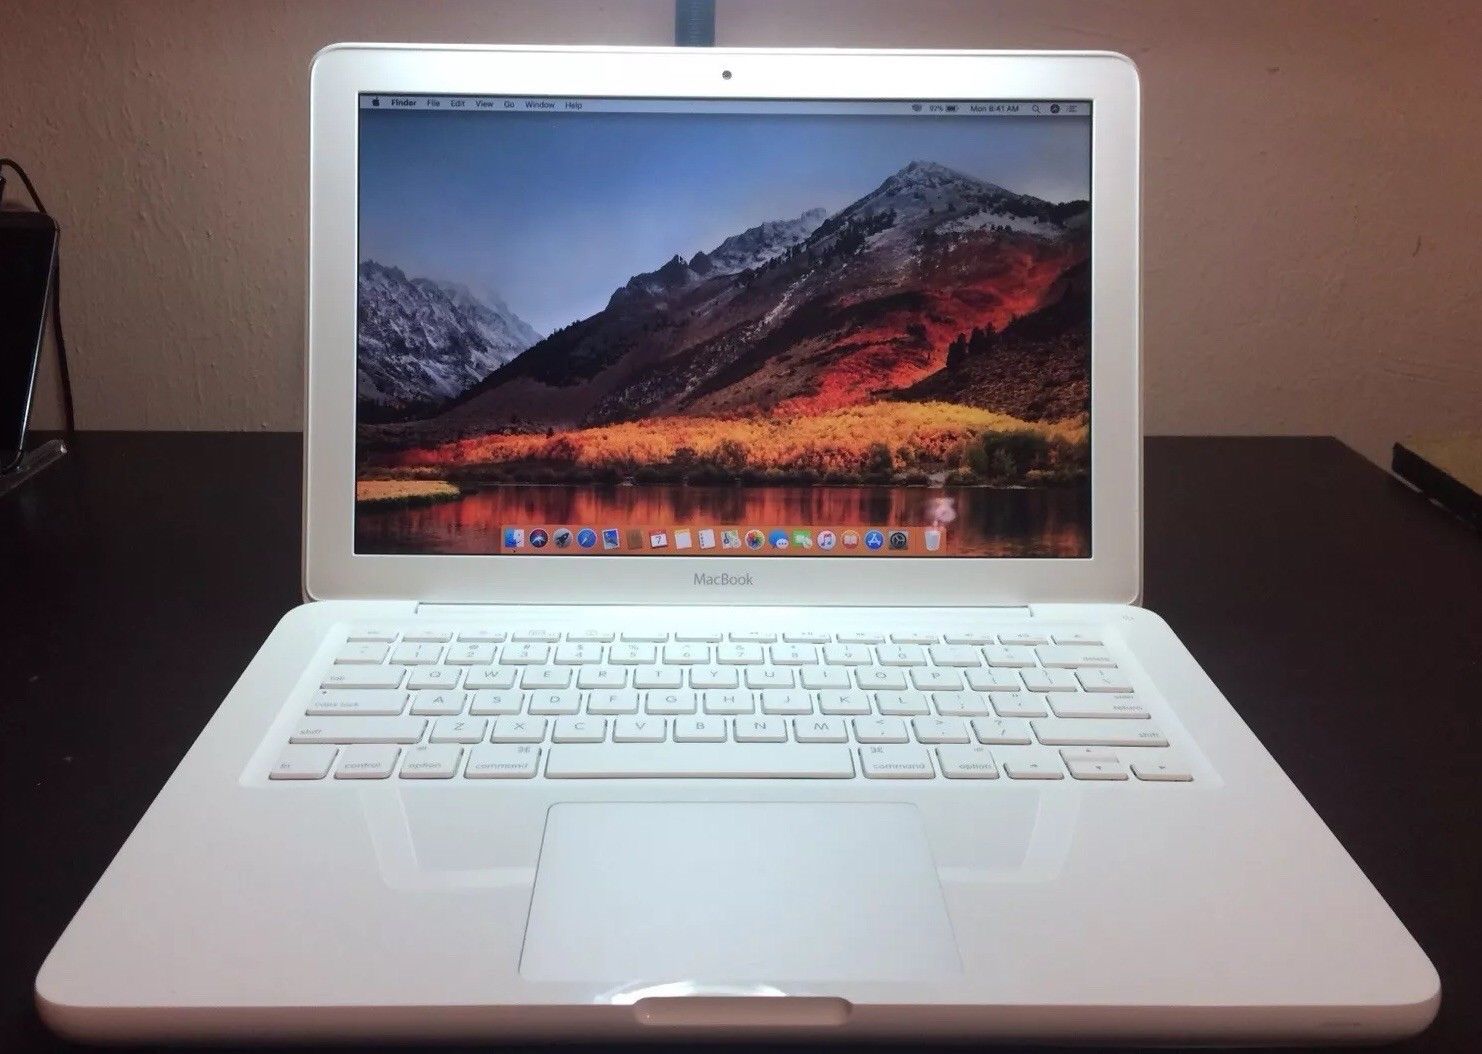 Apple MacBook White 13" 500GB HDD 2.26 GHz 4GB RAM Os High Sierra 2010